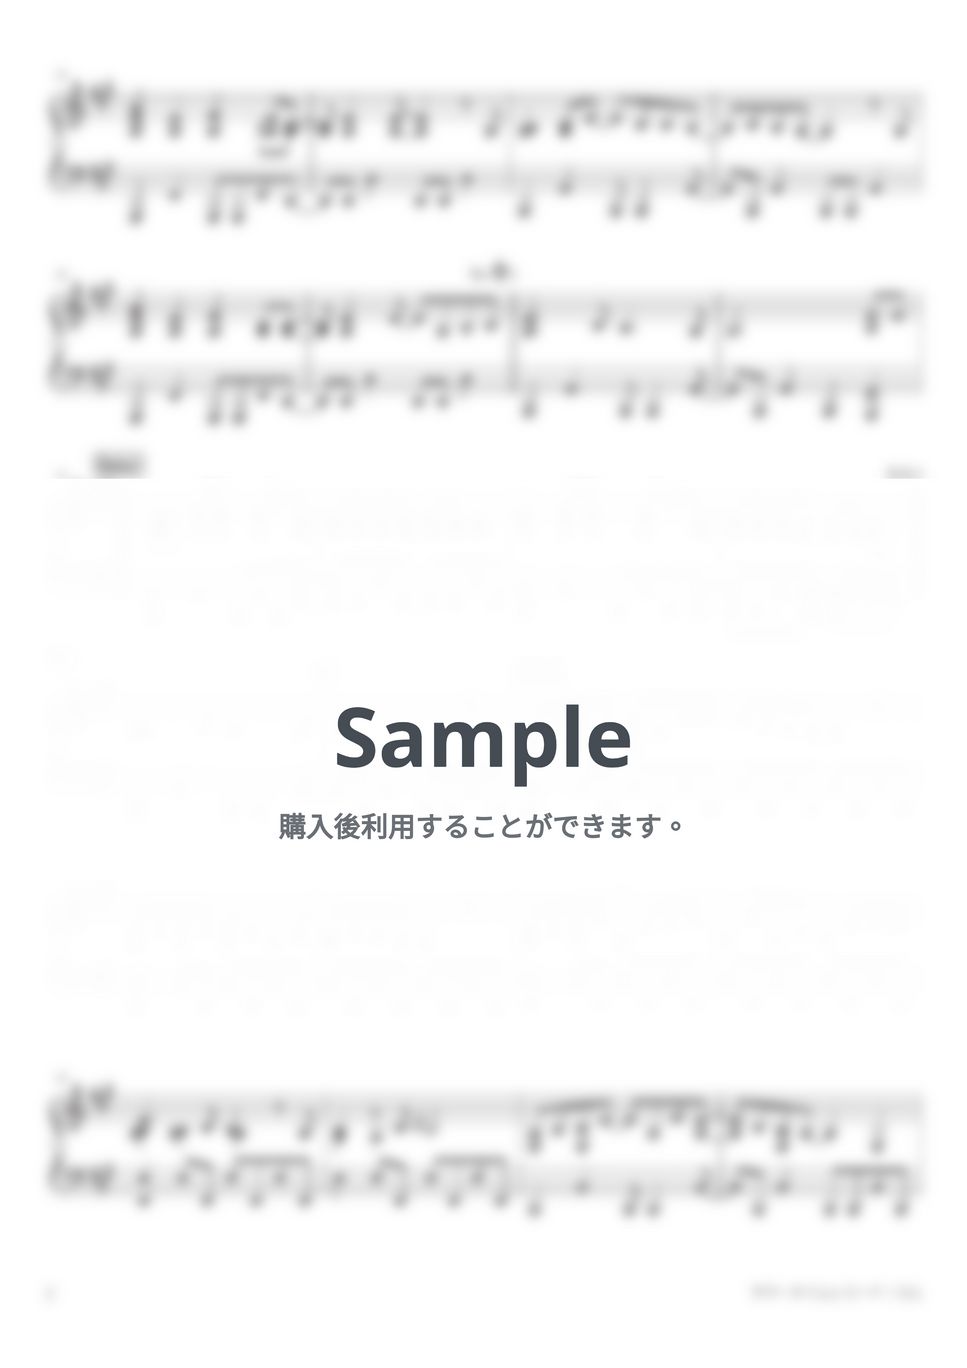 じん - サマータイムレコード (Piano Solo) by 深根 / Fukane